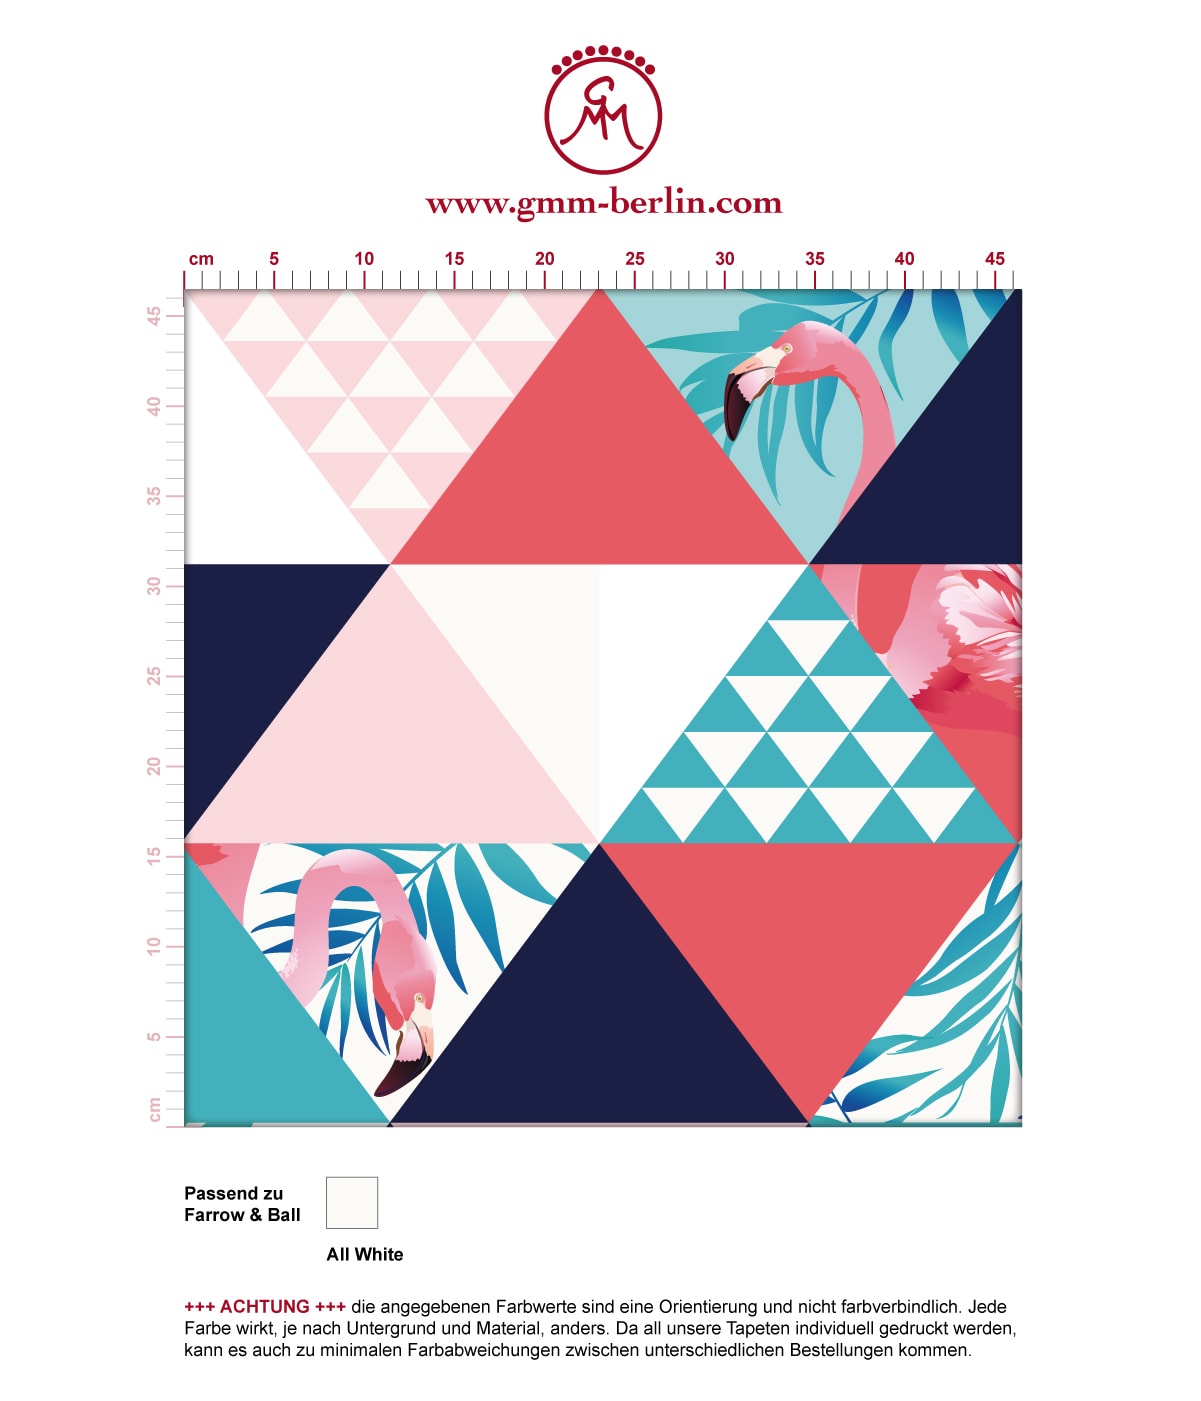 Exotische moderne Tapete "Flamingo Puzzle" mit grafischen Dreiecken in blau angepasst an Farrow and Ball Wandfarben. Aus dem GMM-BERLIN.com Sortiment: Schöne Tapeten in der Farbe: rosa